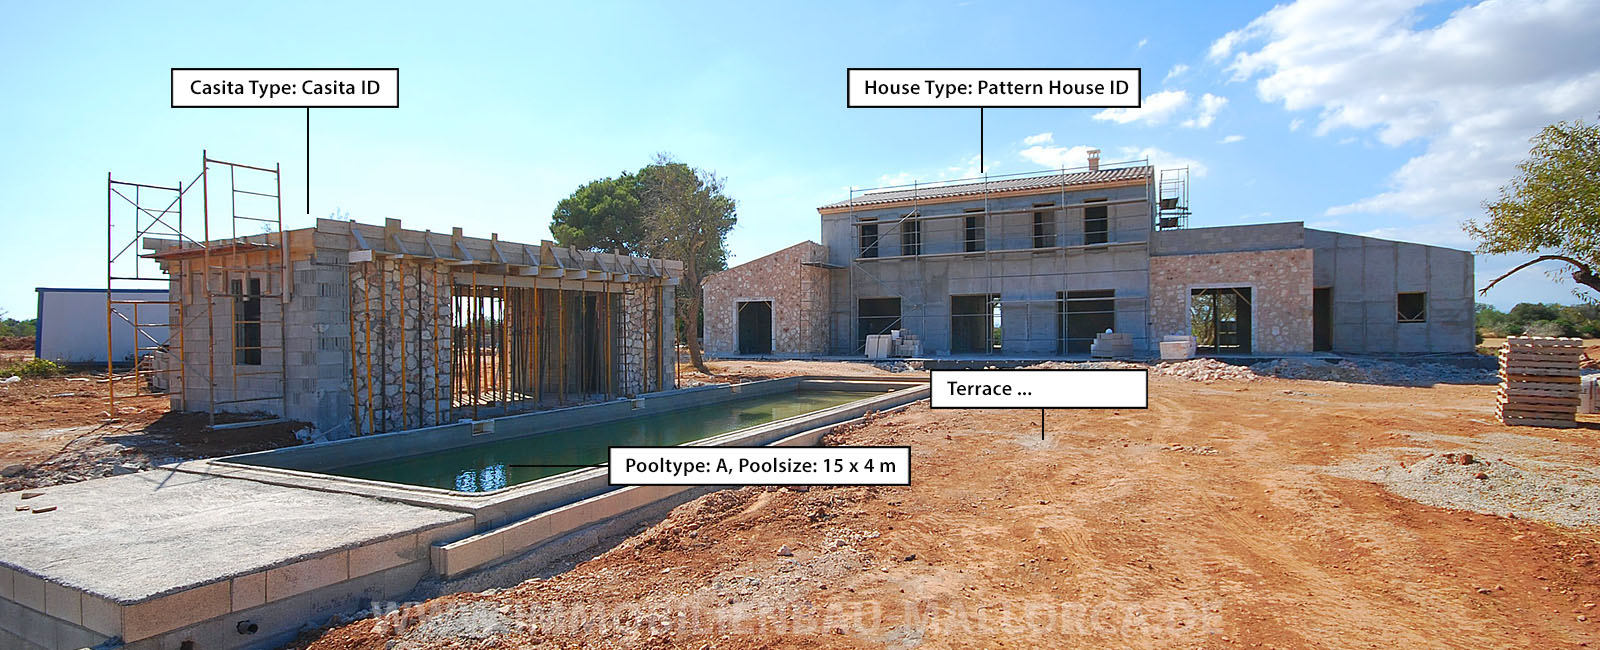 Baukostenrechner Mallorca. Was kostet es, ein Haus auf Mallorca zu bauen? Kalkulation der Kosten für einen Hausbau auf Mallorca.